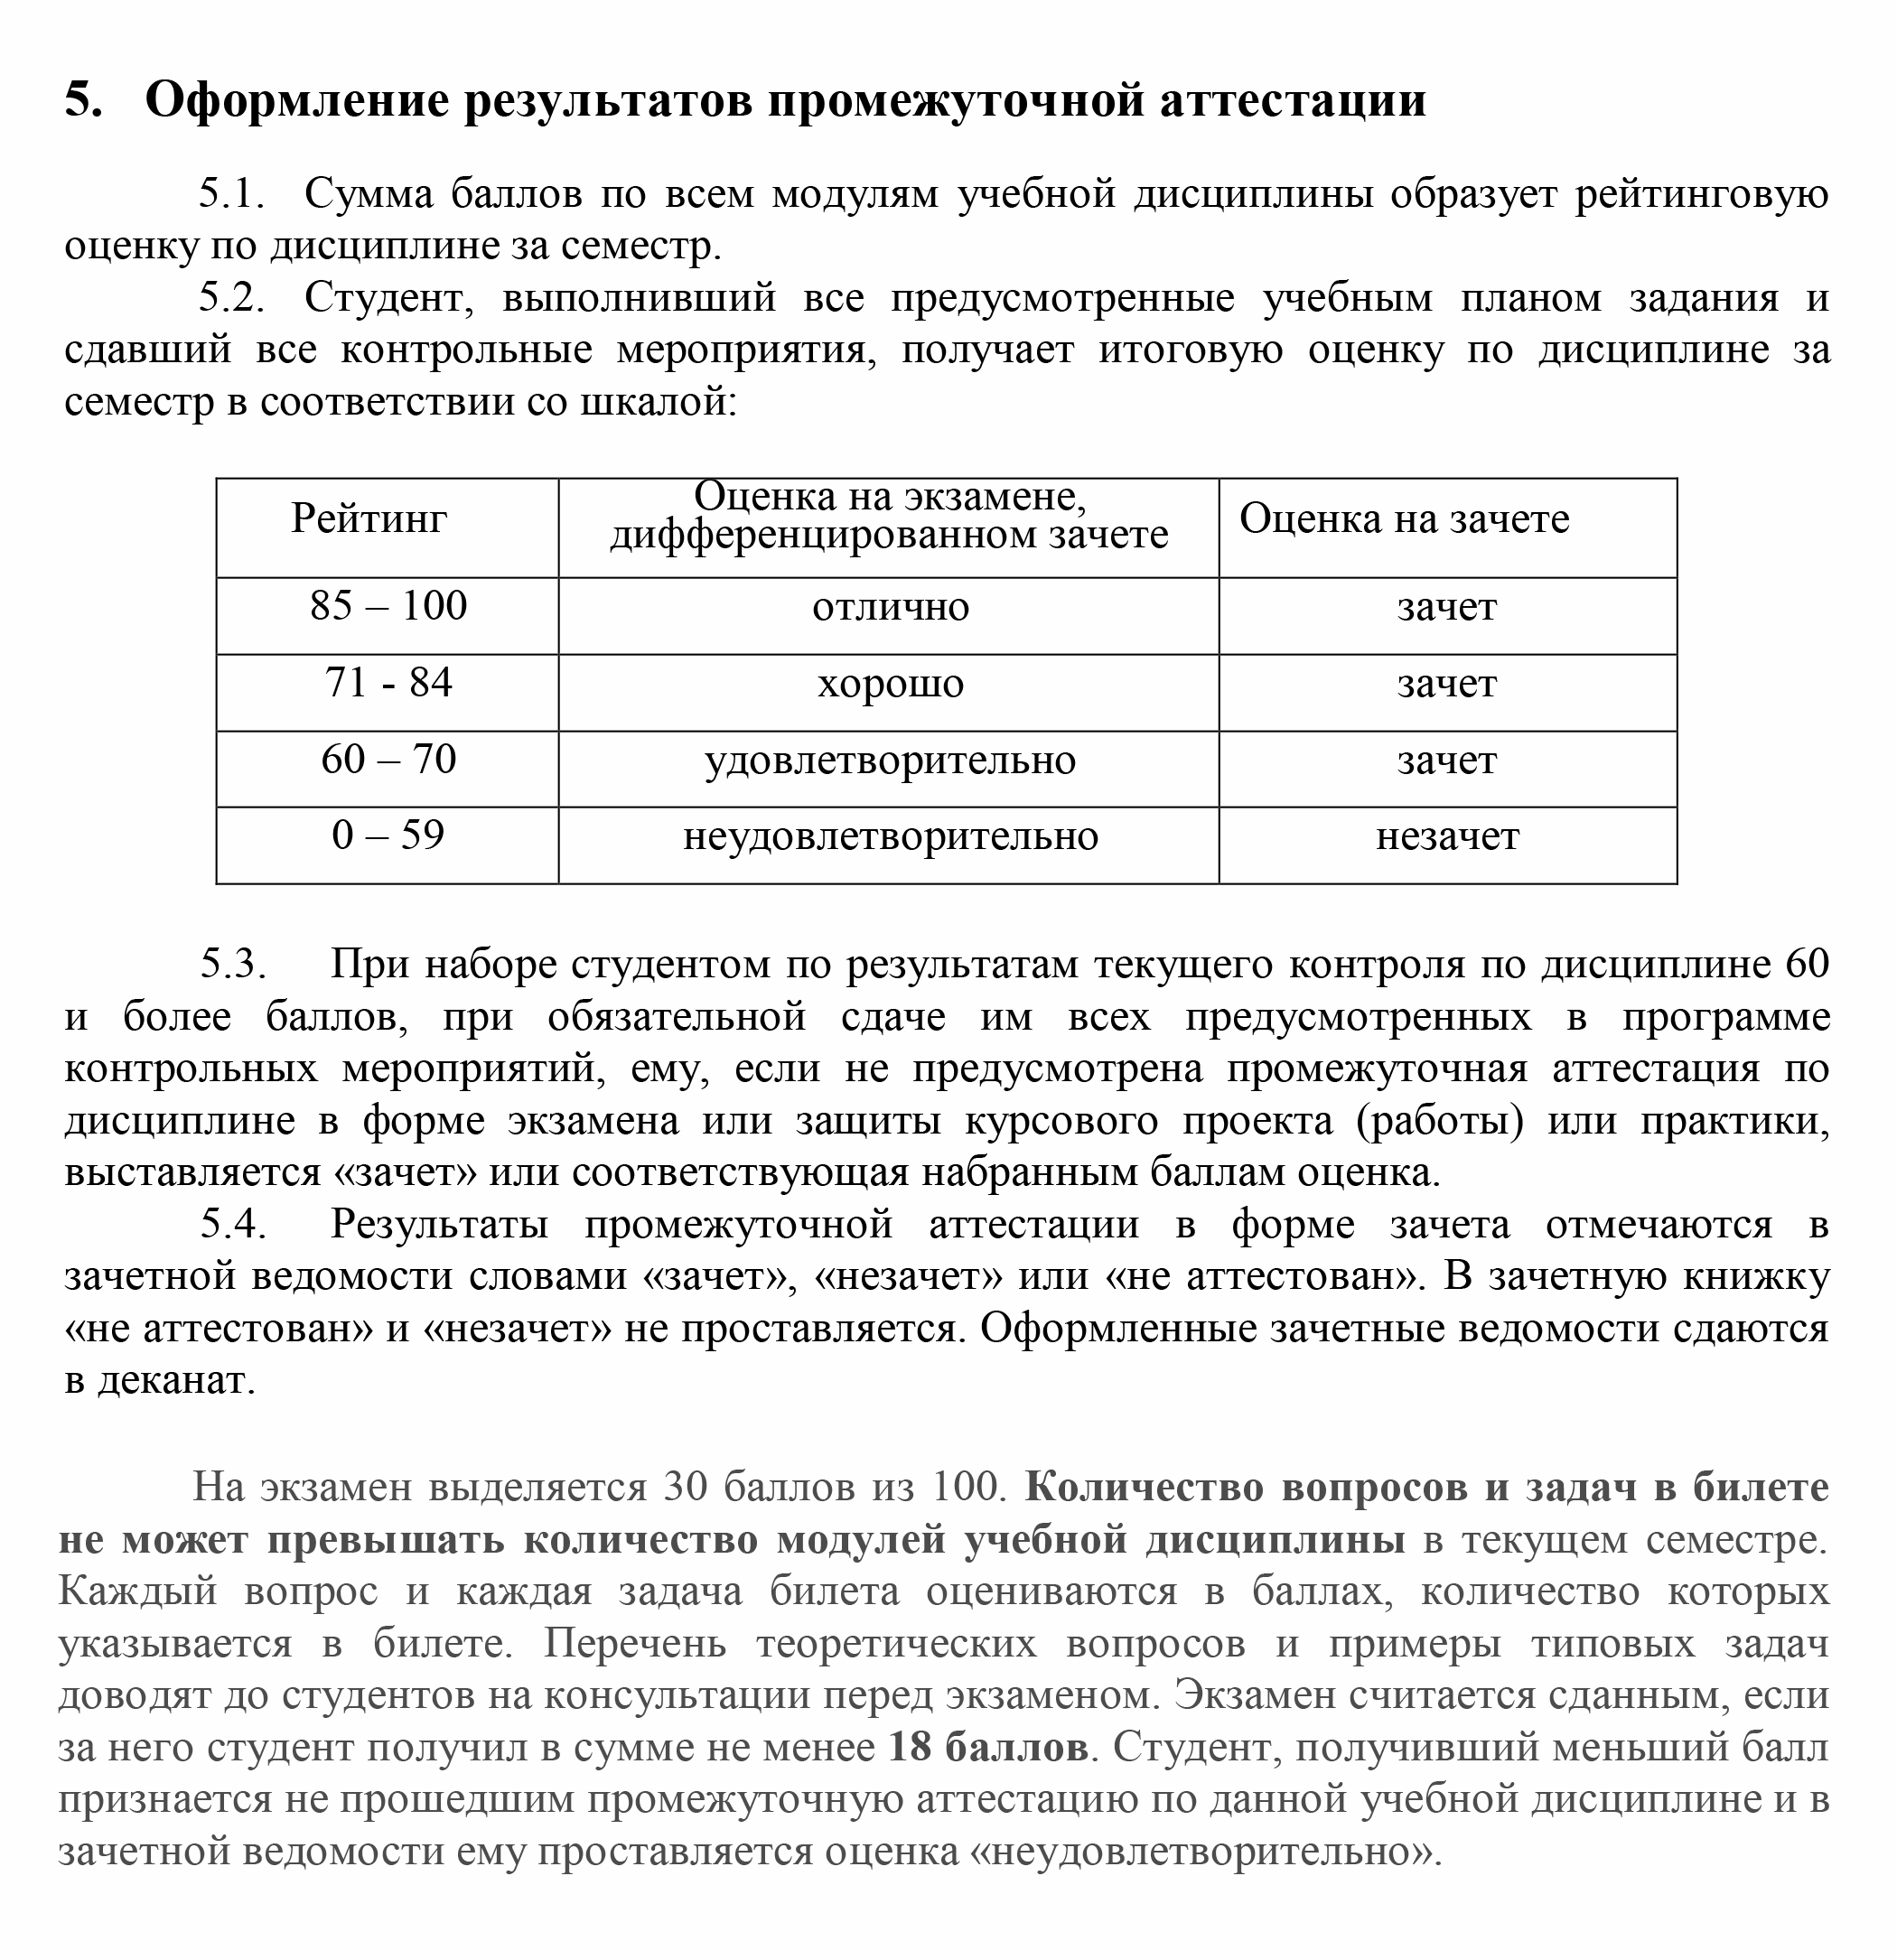 Например, в МГТУ им. Н. Э. Баумана выставляют оценки по балльно-рейтинговой системе. На экзамене можно набрать максимум 30 баллов. Поэтому получить хорошую оценку по предмету, не посещая пары и не выполняя задания, не выйдет. Источник: mtkp.ru